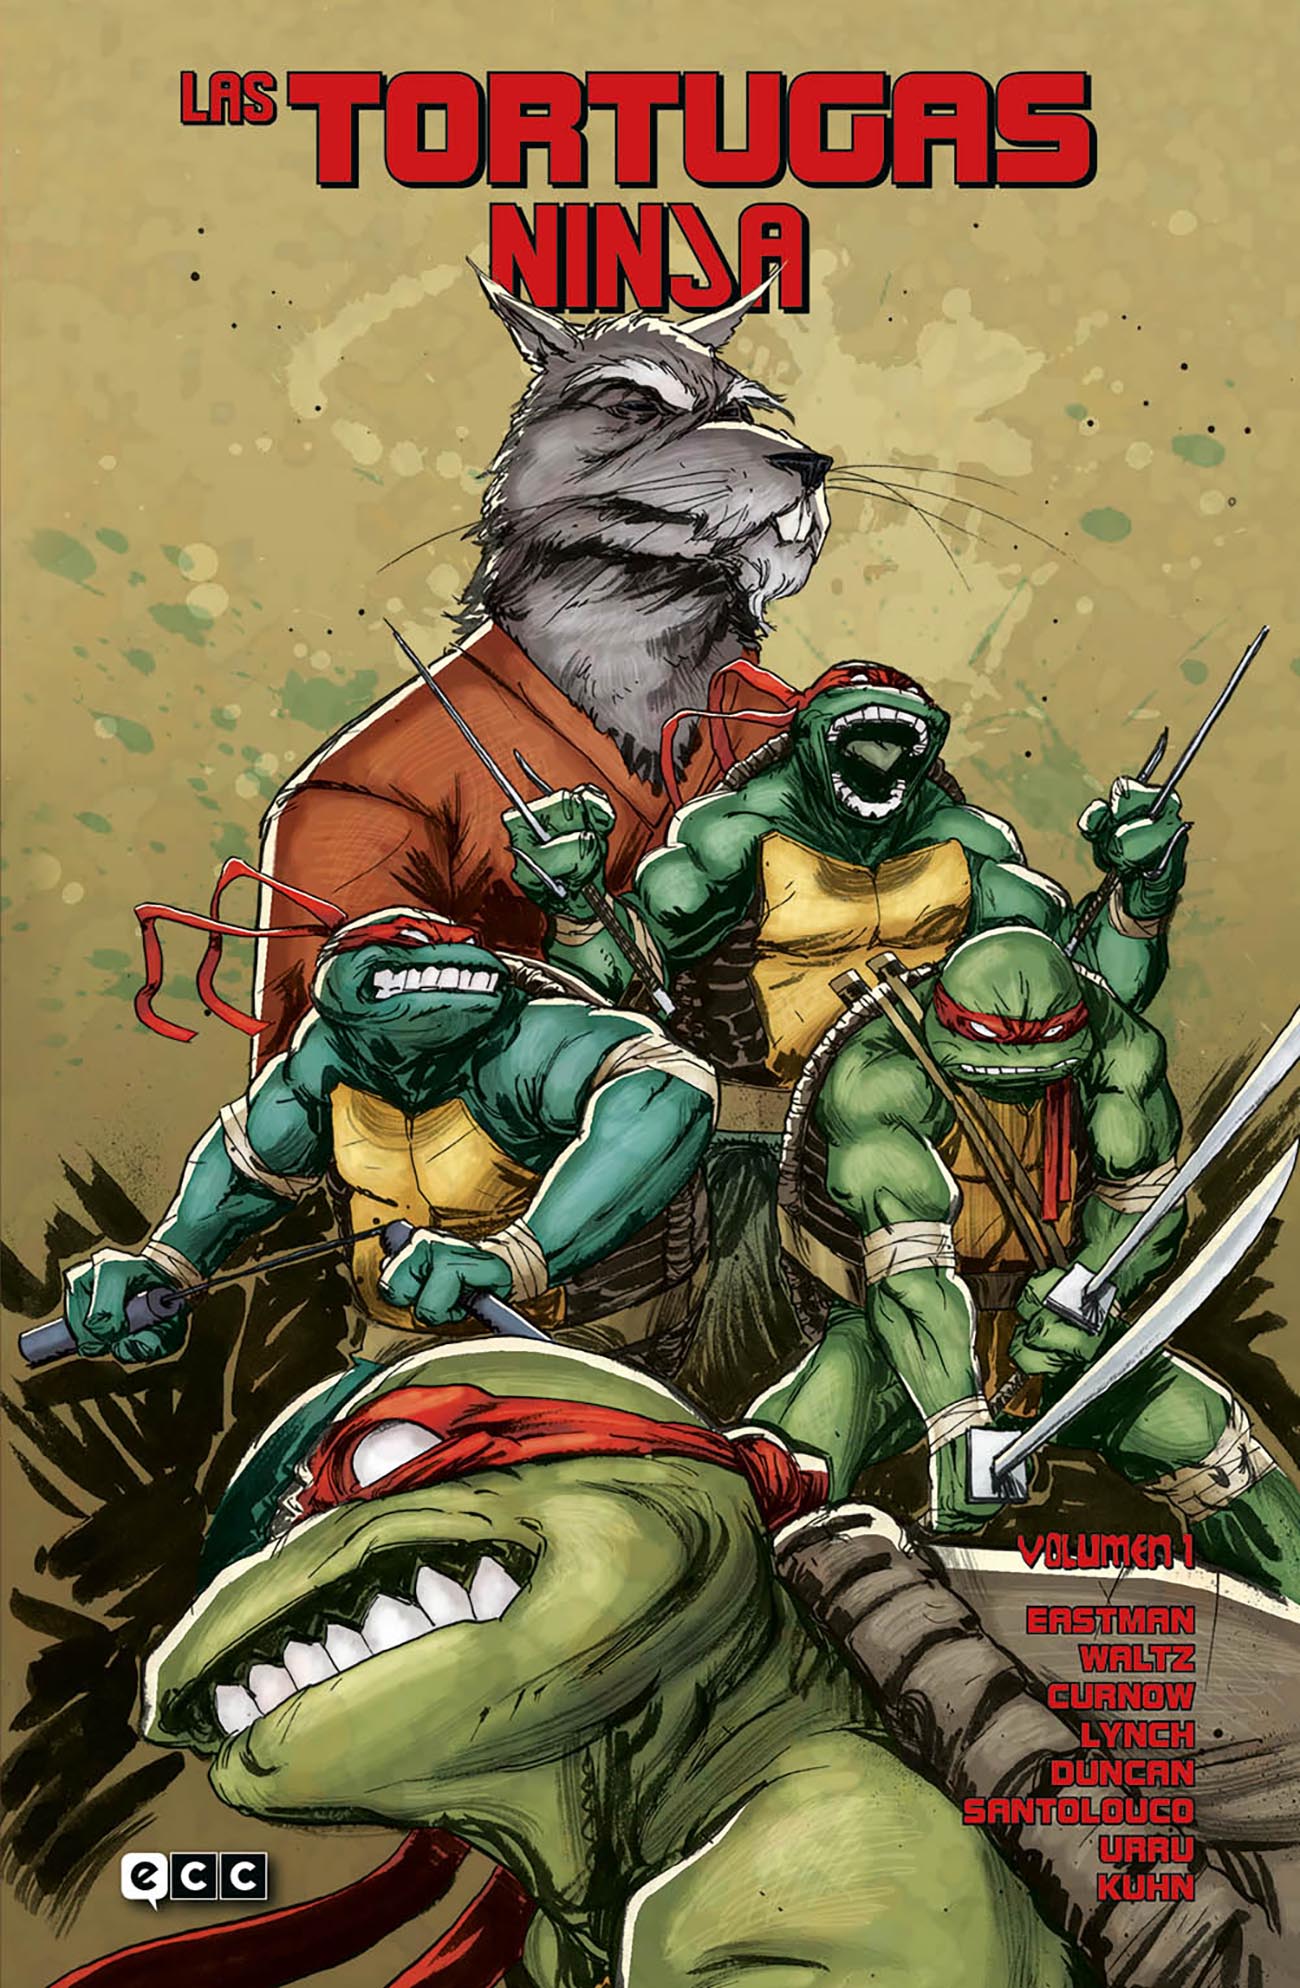 Las Tortugas Ninja vuelven con mucha presencia a las tiendas de cómics